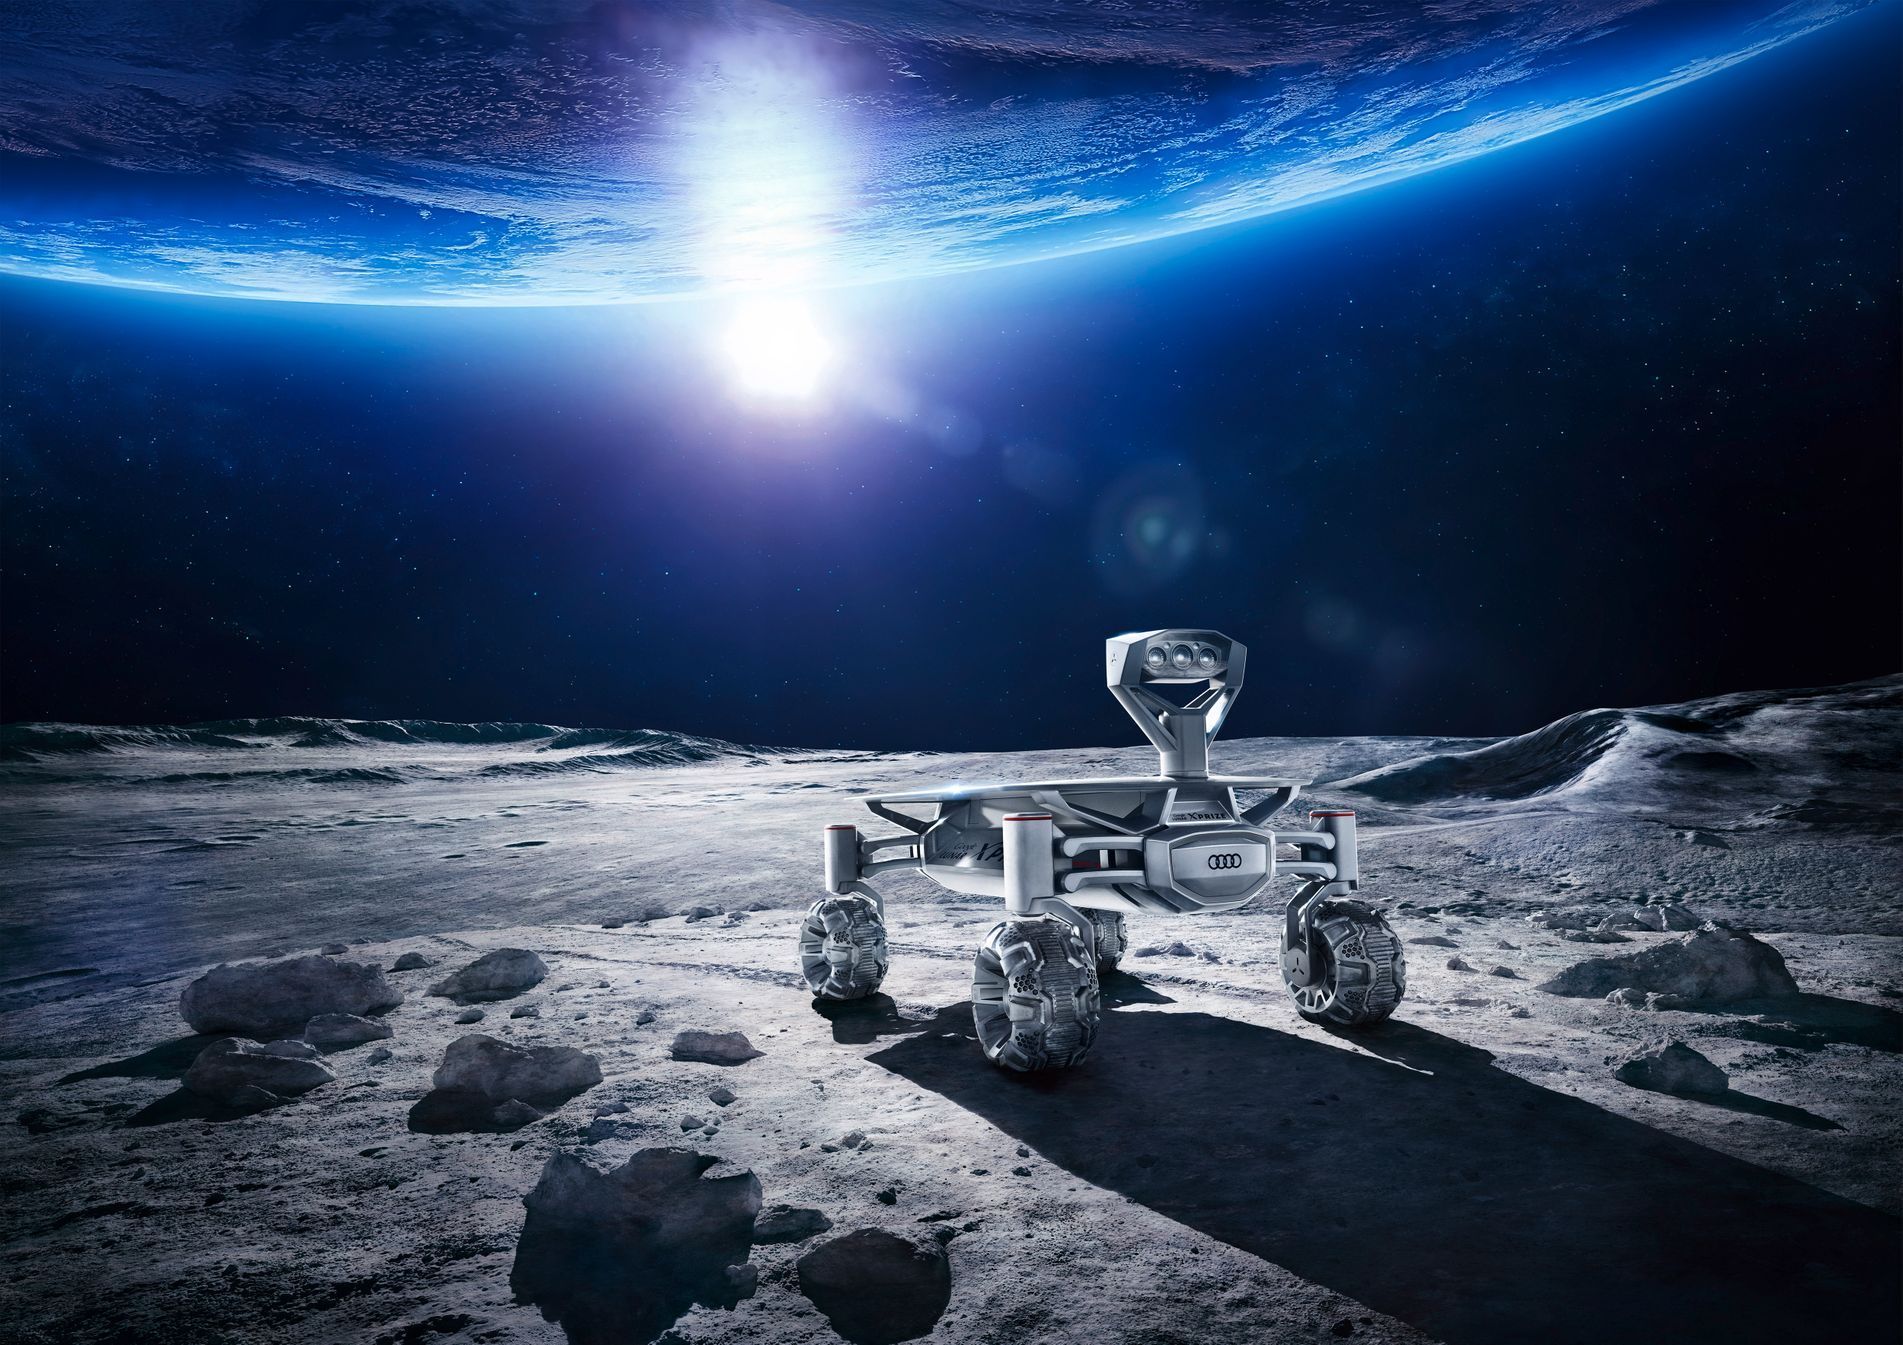 Lunární vozítko Audi bude na Měsíci natáčet videa, které přes měsíční mobilní síť zašle na Zem.